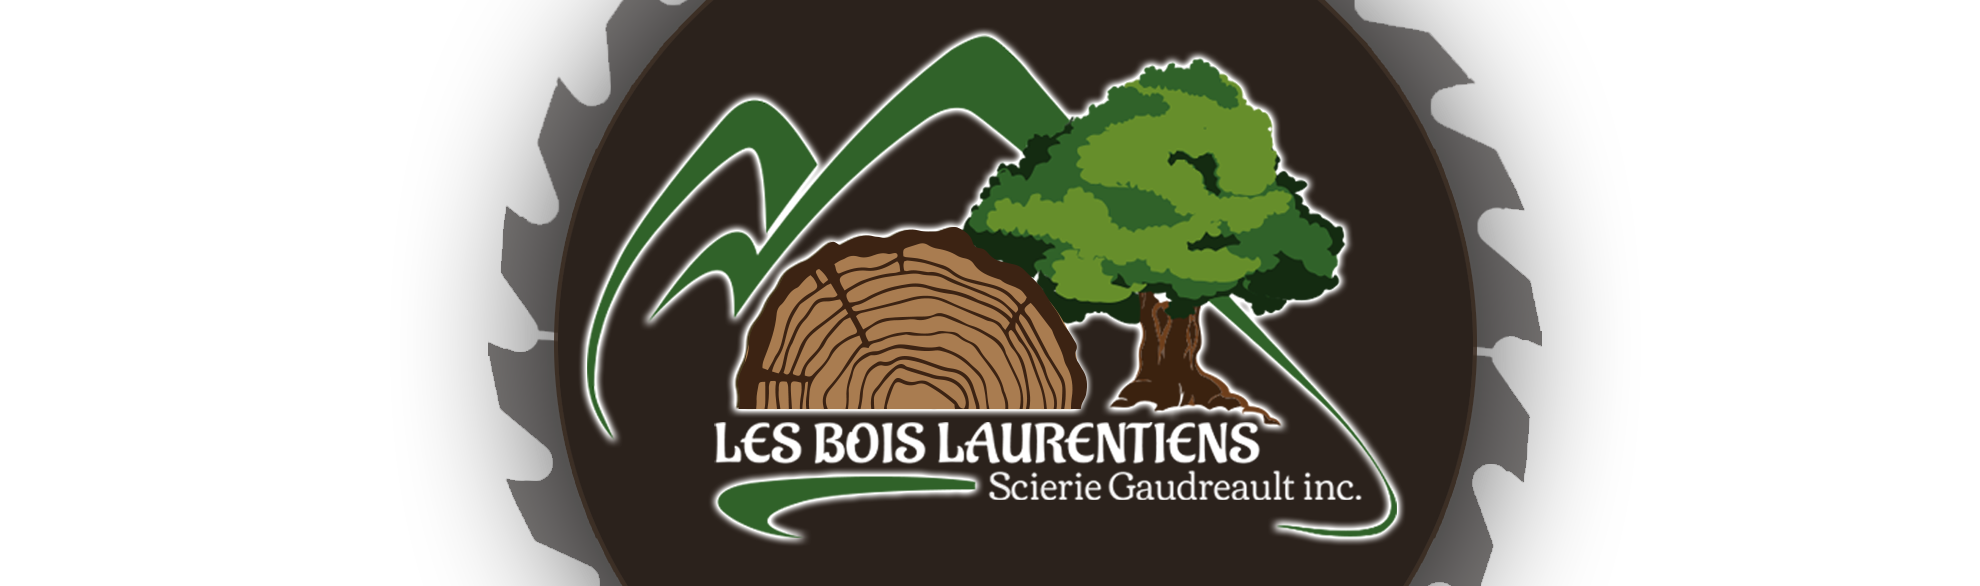 scierie Gaudreault Bois Laurentiens